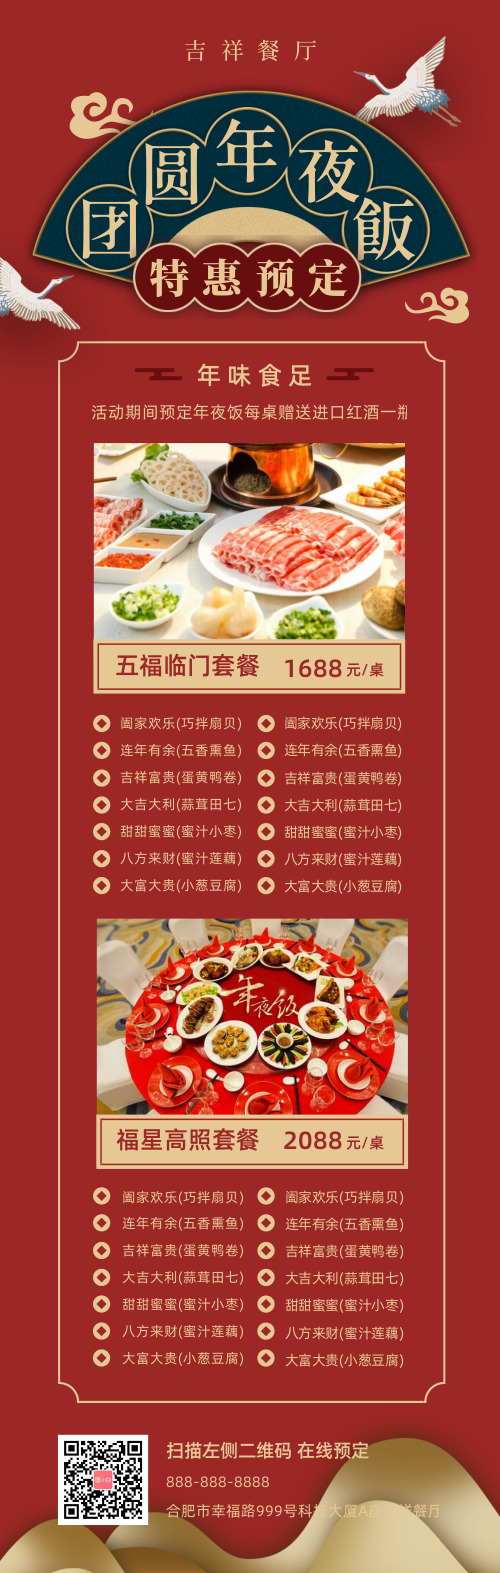 团圆年夜饭餐厅饭店预定餐饮业活动长图海报